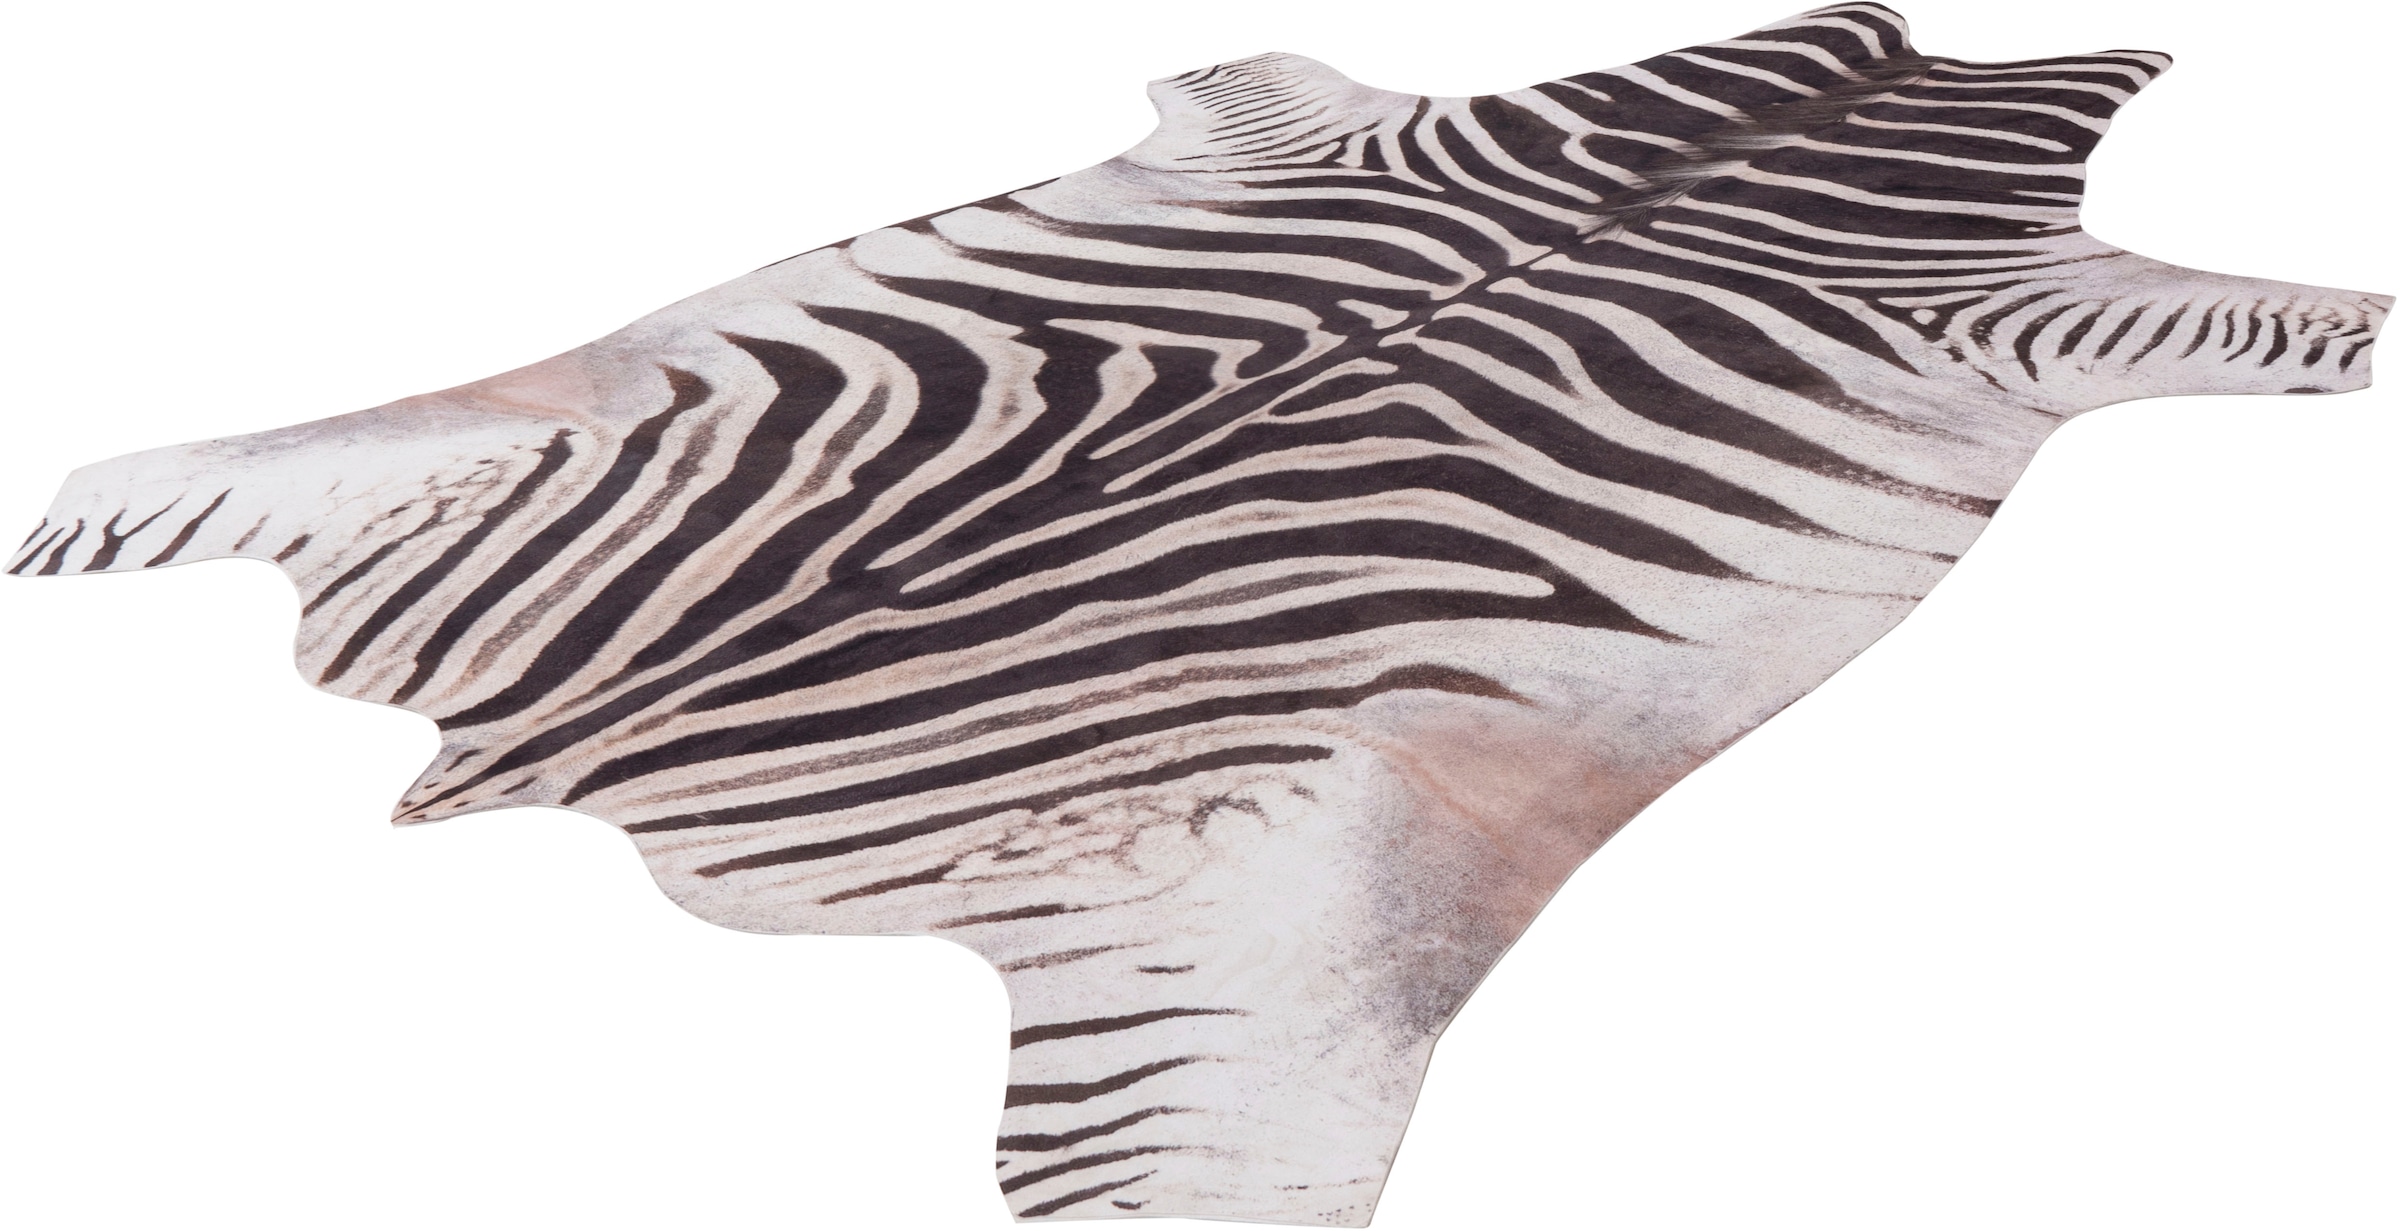 Obsession Fellteppich "my Toledo 192", fellförmig, Kunstfell, gedruckte Zebra-Optik, ideal im Wohnzimmer & Schlafzimmer